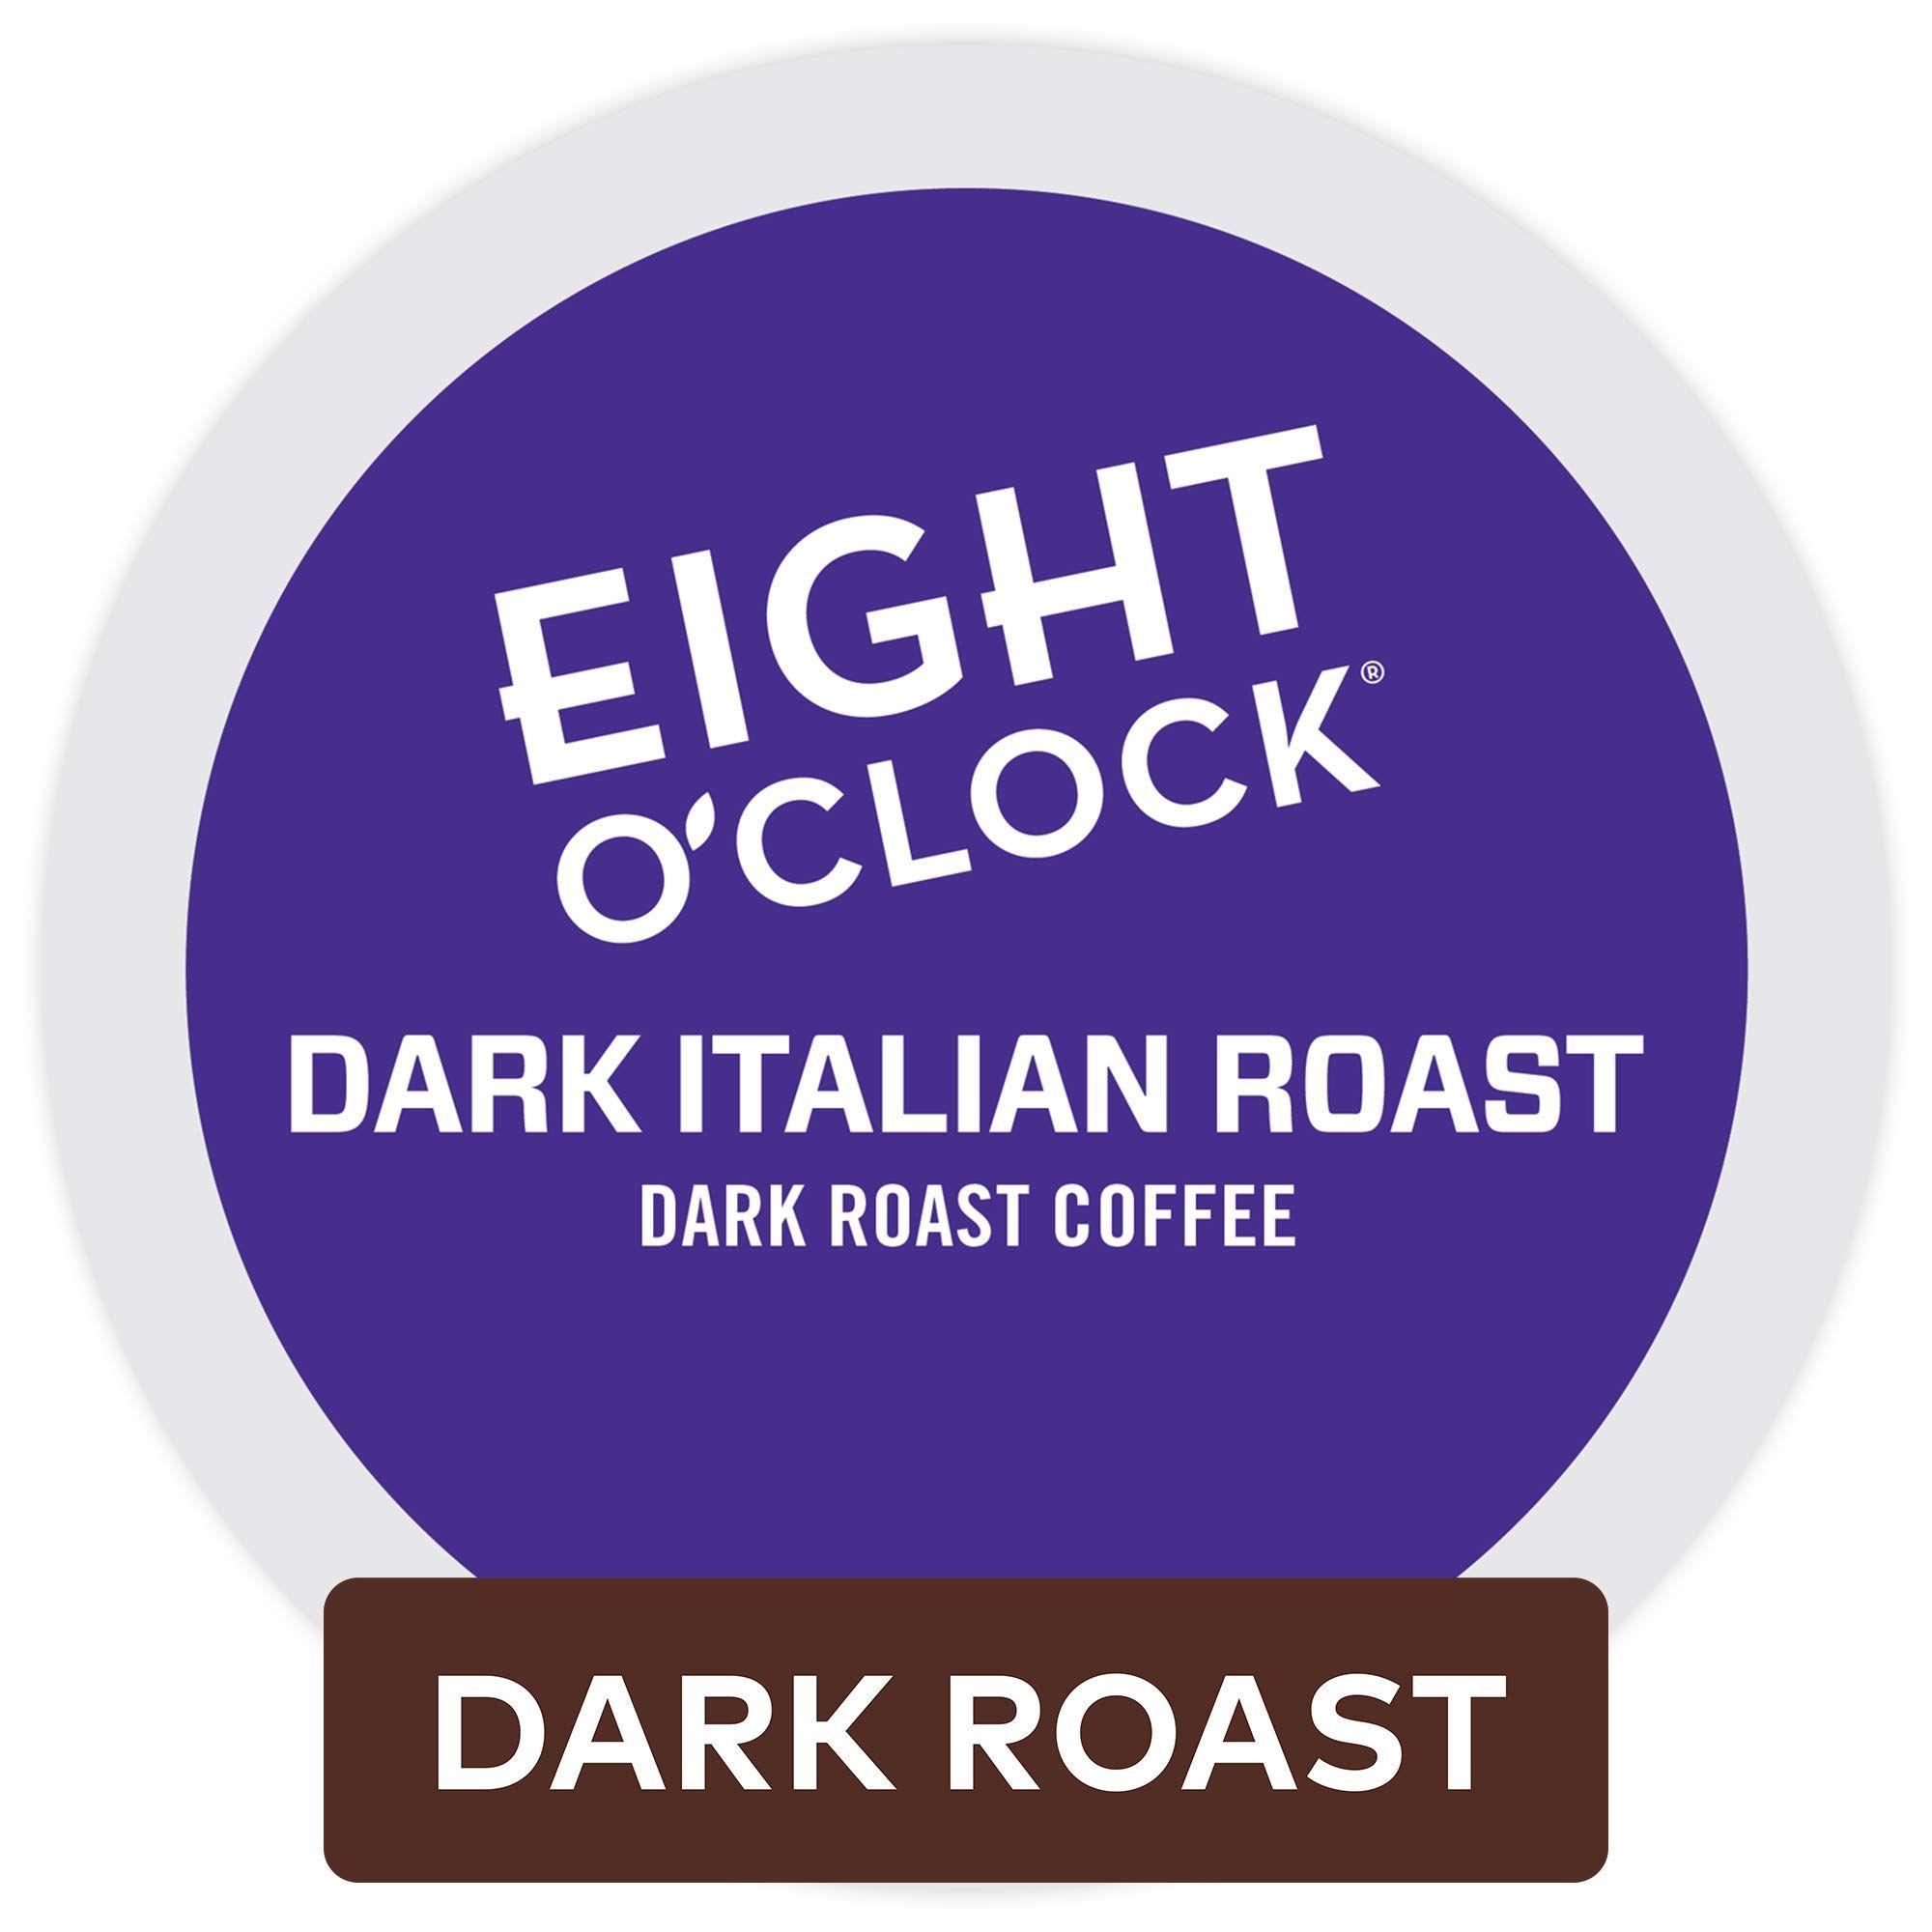 Dark Roast Coffee Brands Logo - Keurig, Eight O'Clock Coffee, French Roast, K Cup Packs, 72 Count